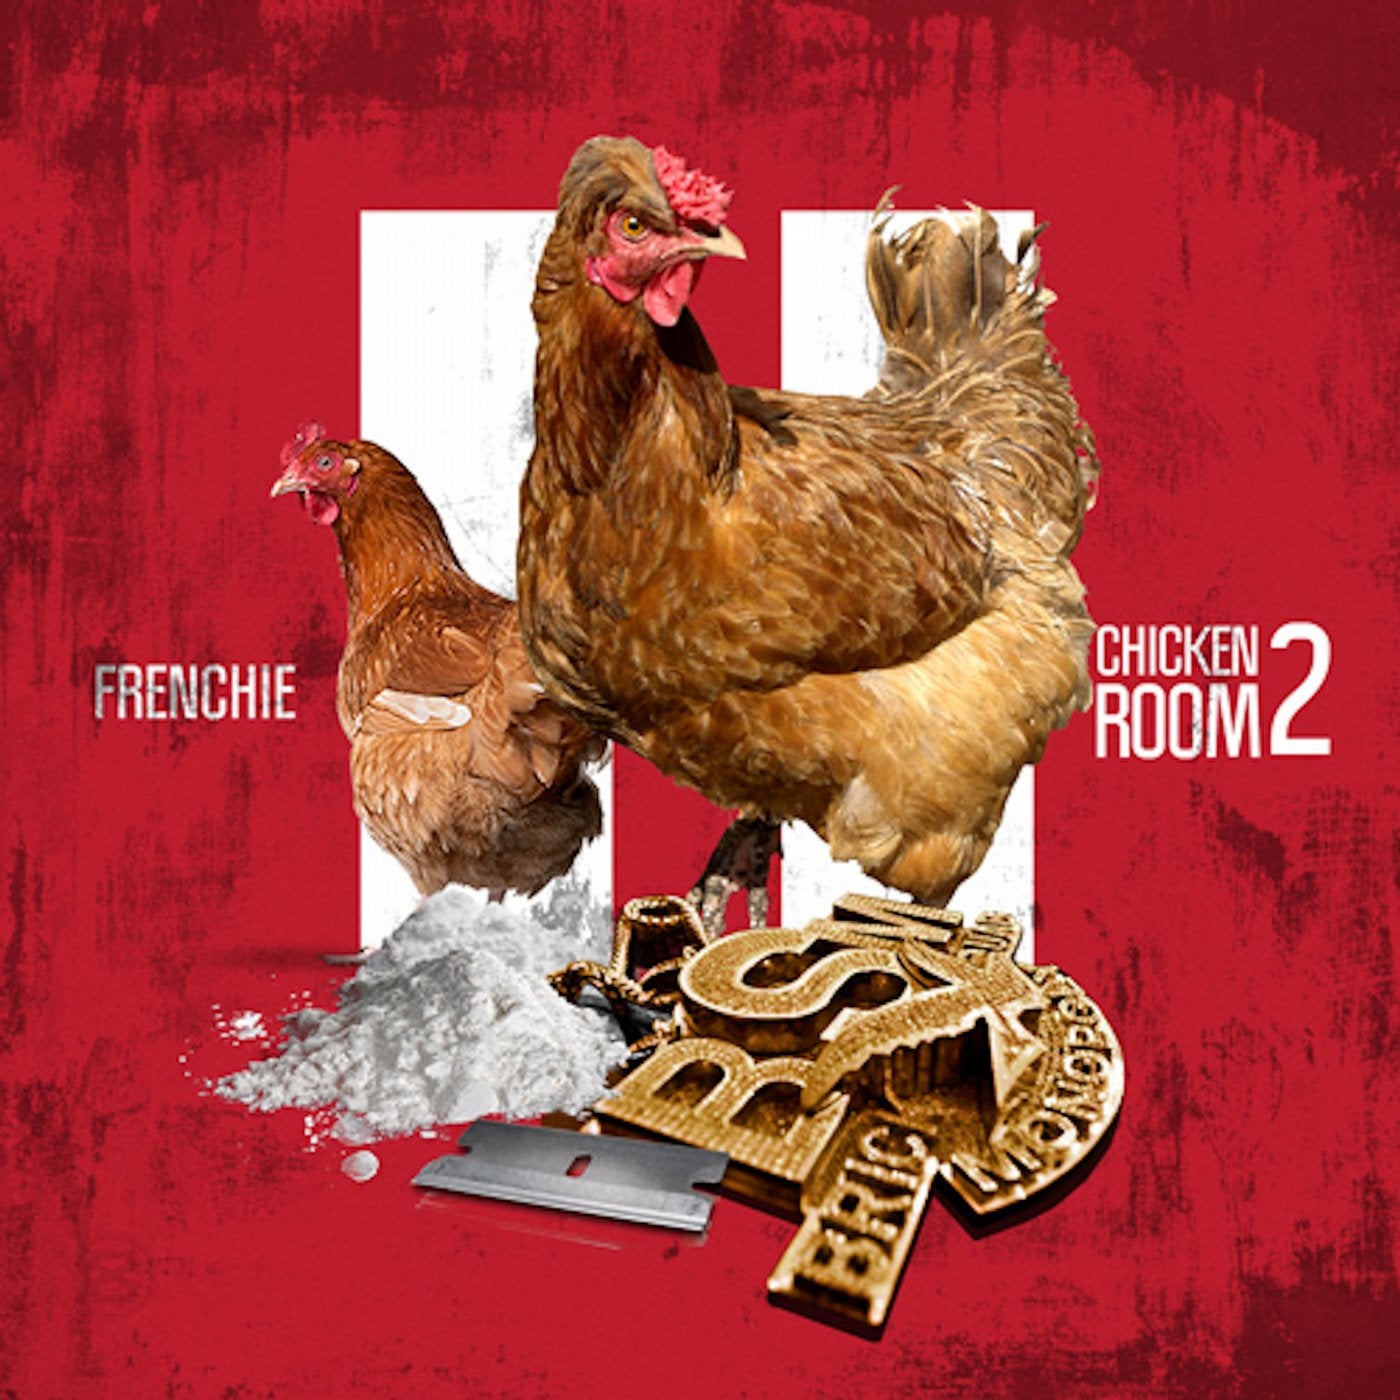 Chicken Room 2